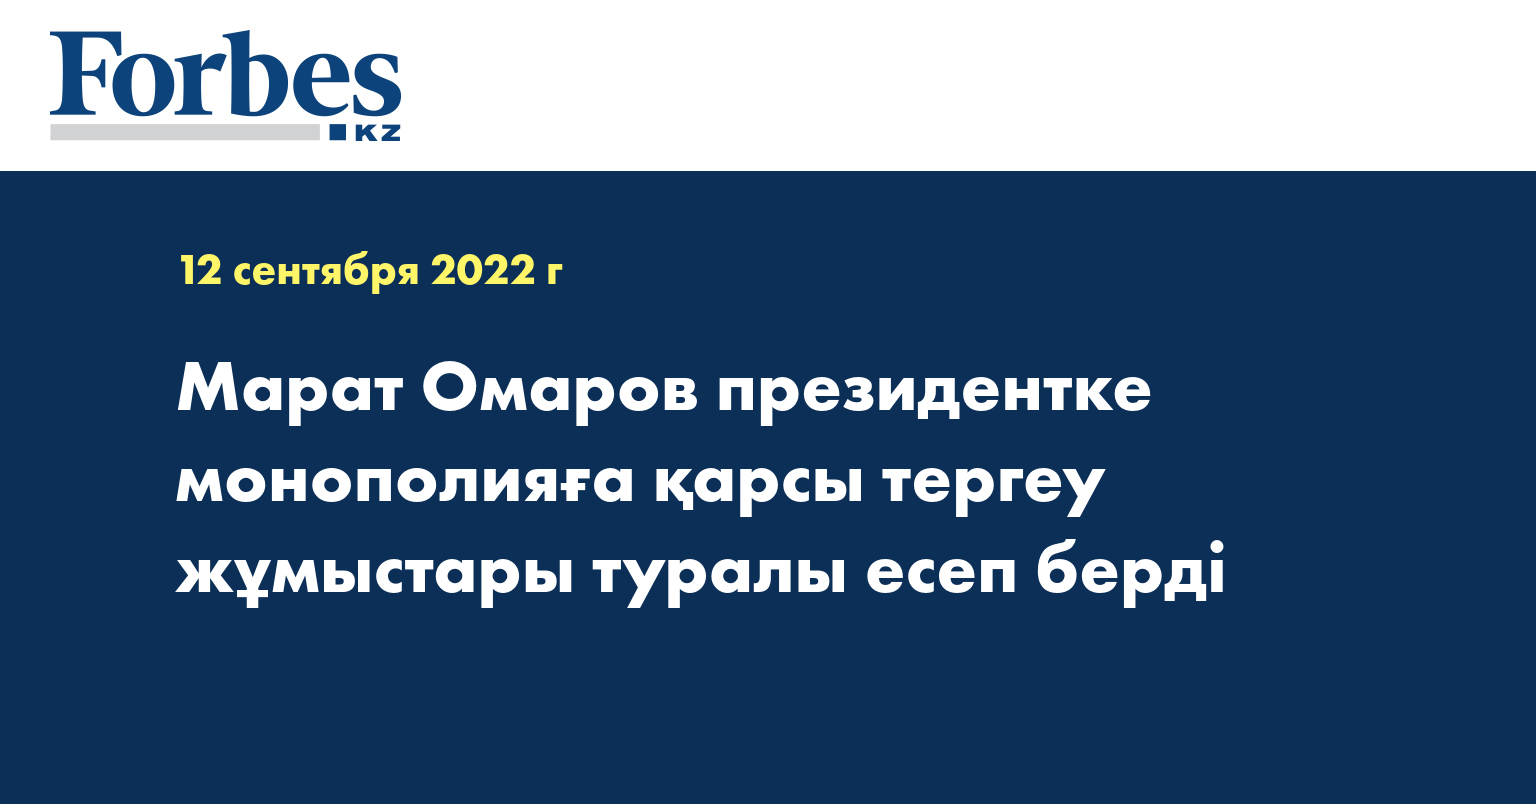 Марат Омаров президентке монополияға қарсы тергеу жұмыстары туралы есеп берді